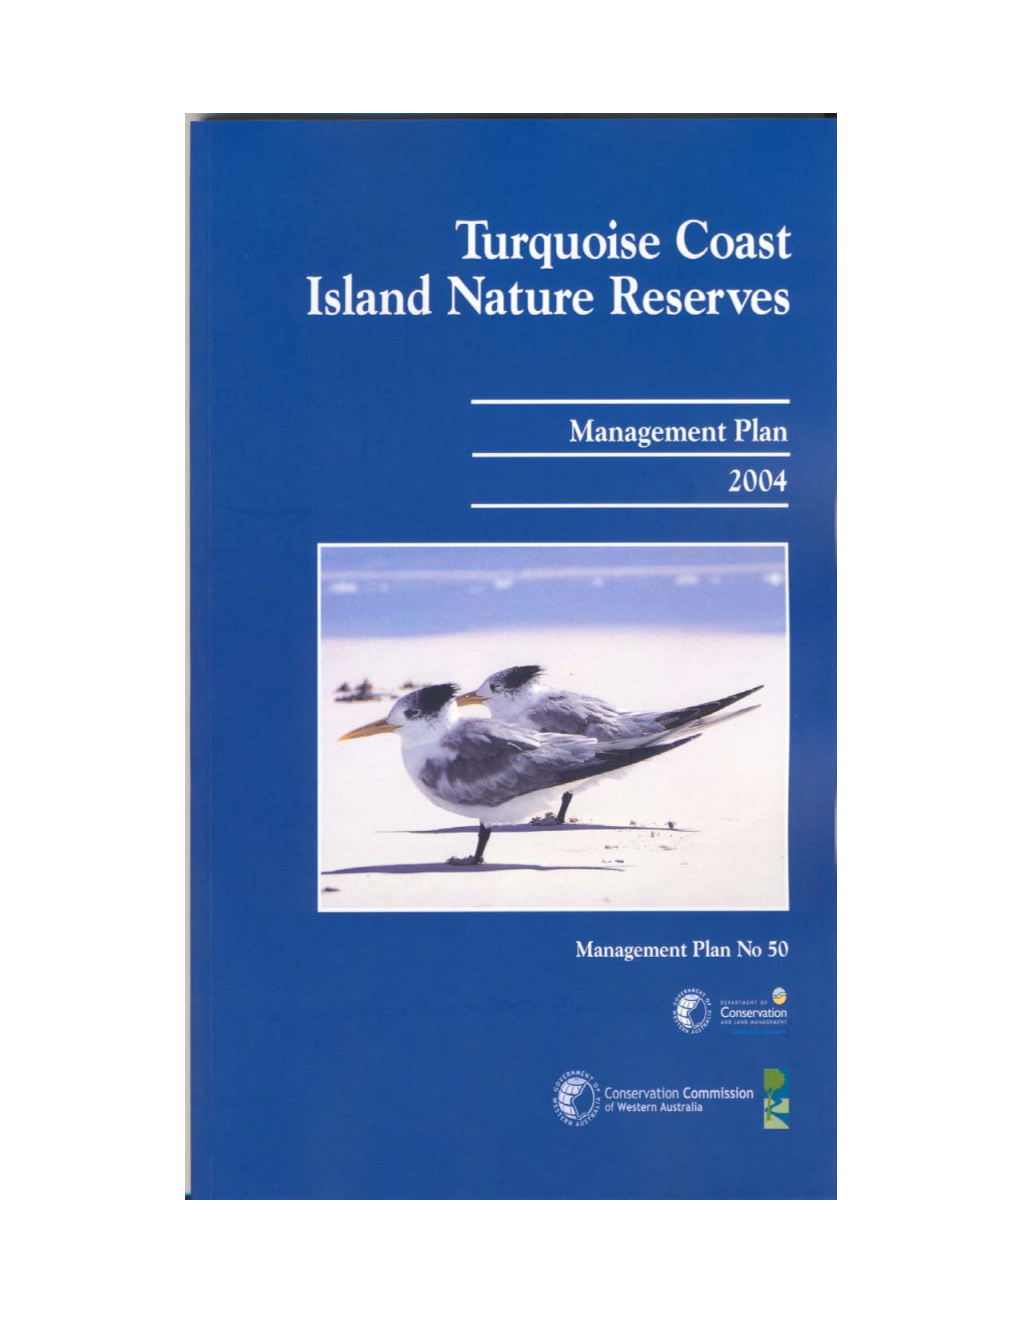 Turquoise Coast Island Nature Reserves